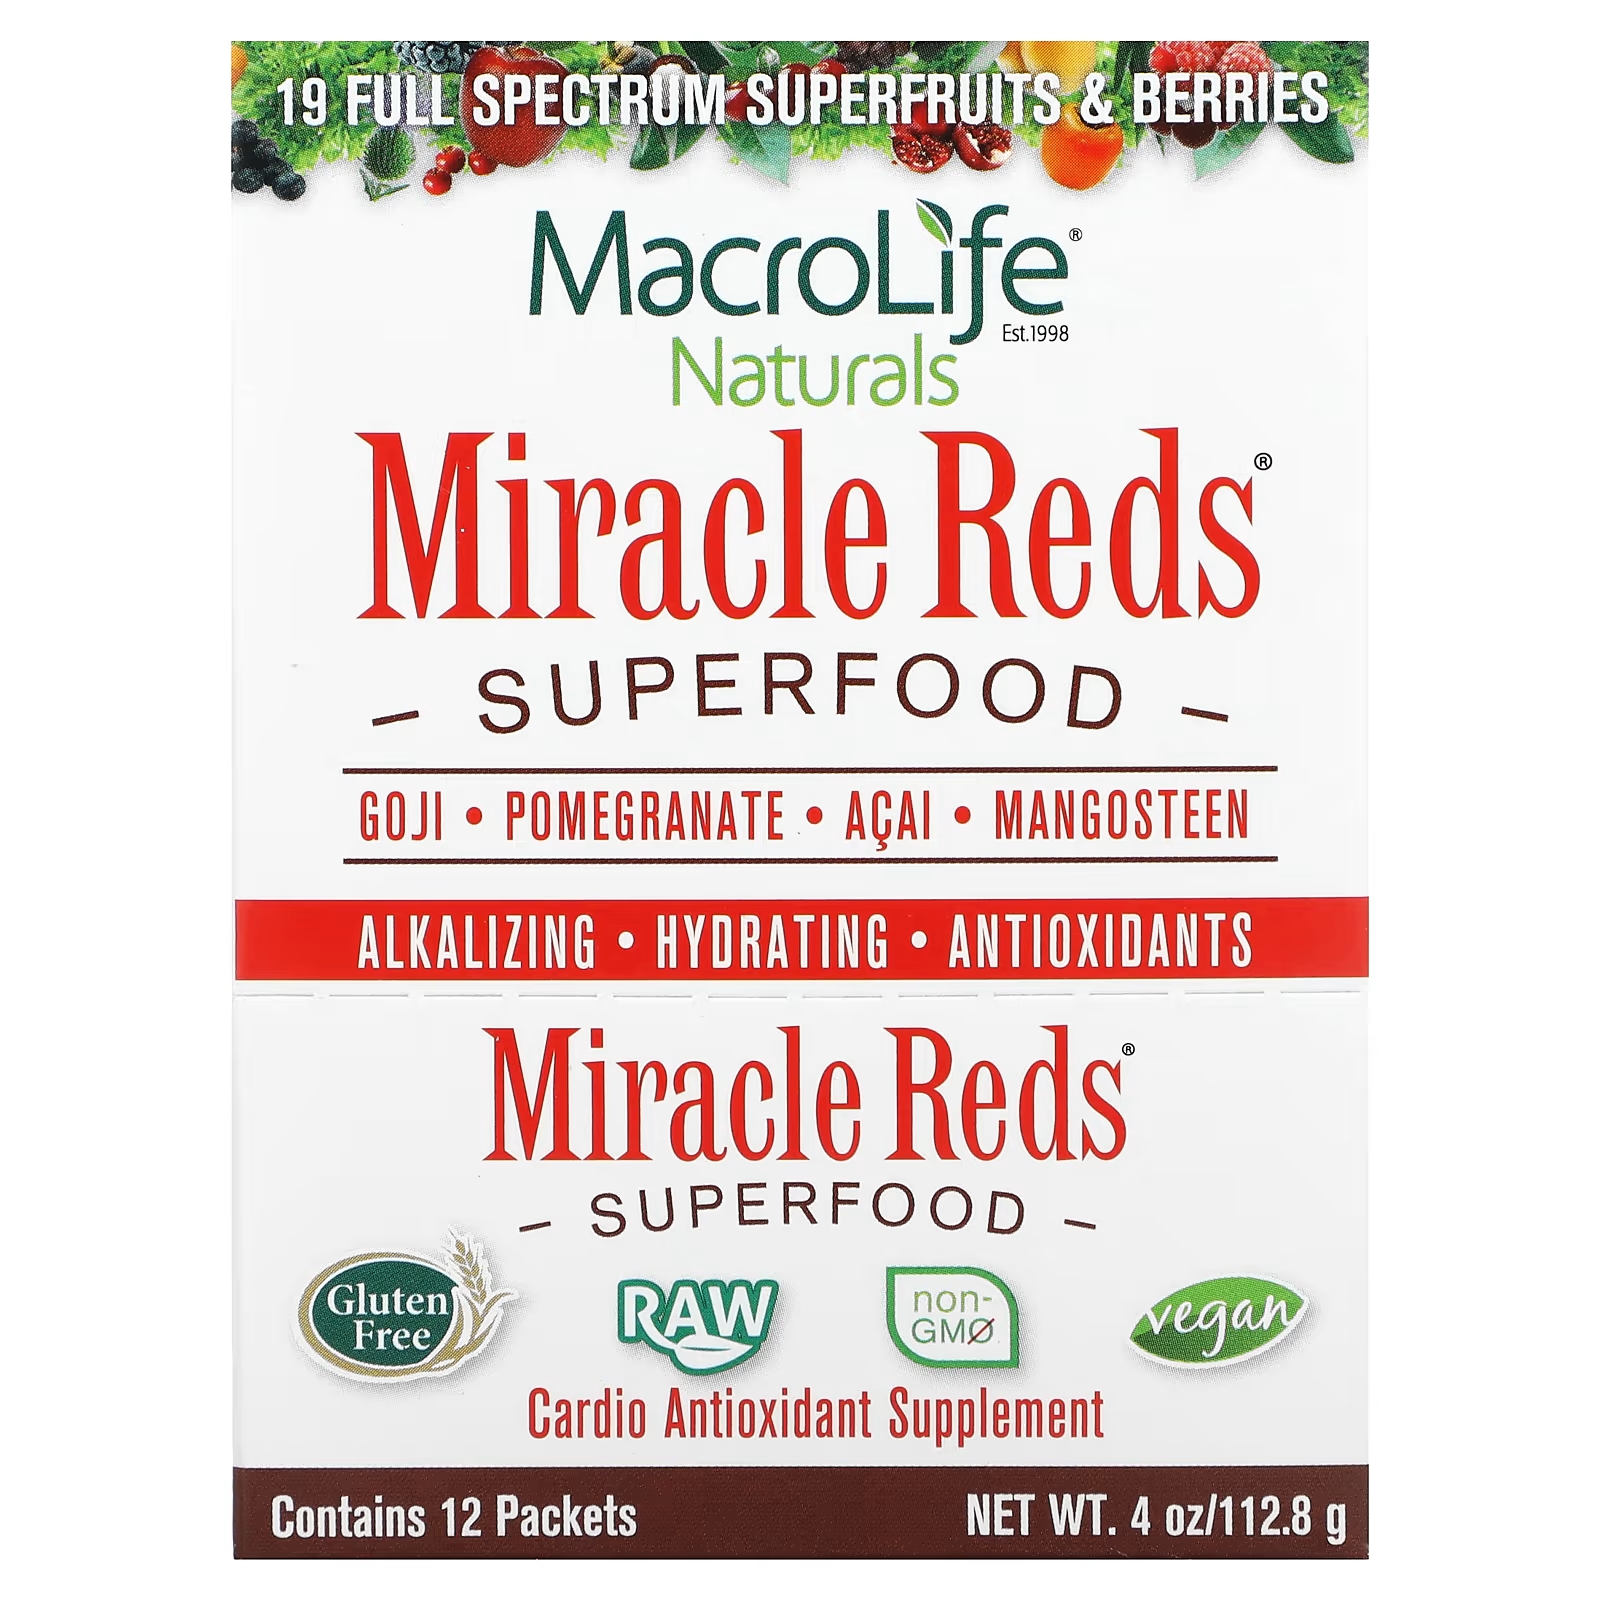 Пищевая добавка Macrolife Naturals Miracle Reds Superfood Goji Pomegranate Acai Mangosteen, 12 пакетиков по 9,5 г